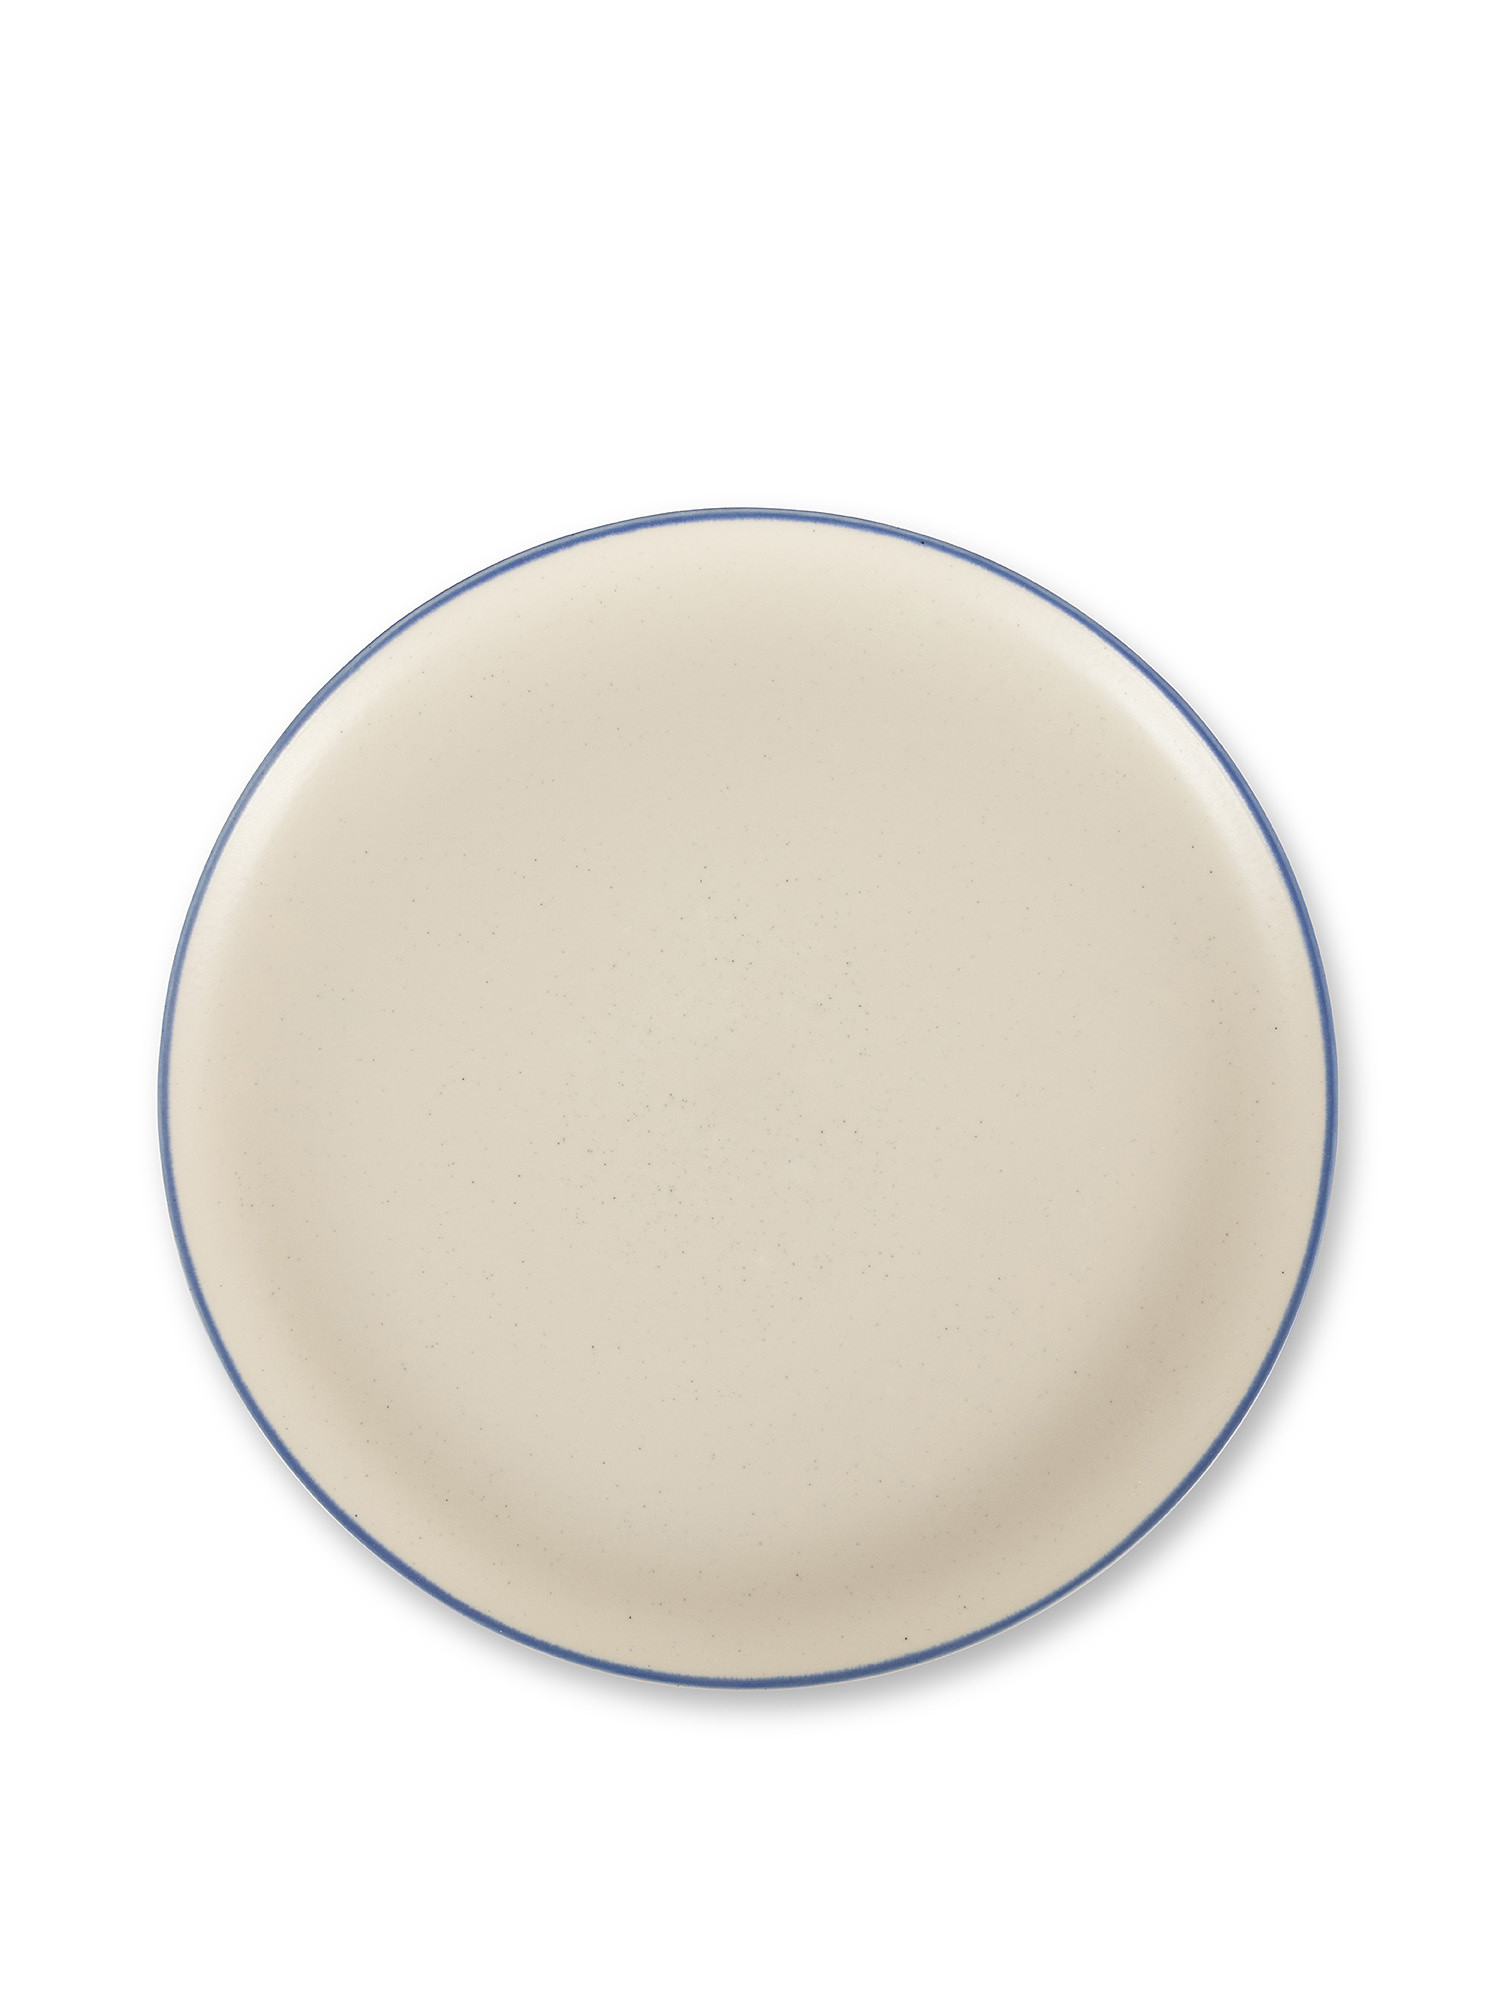 Piatto piano ceramica con bordino, Bianco, large